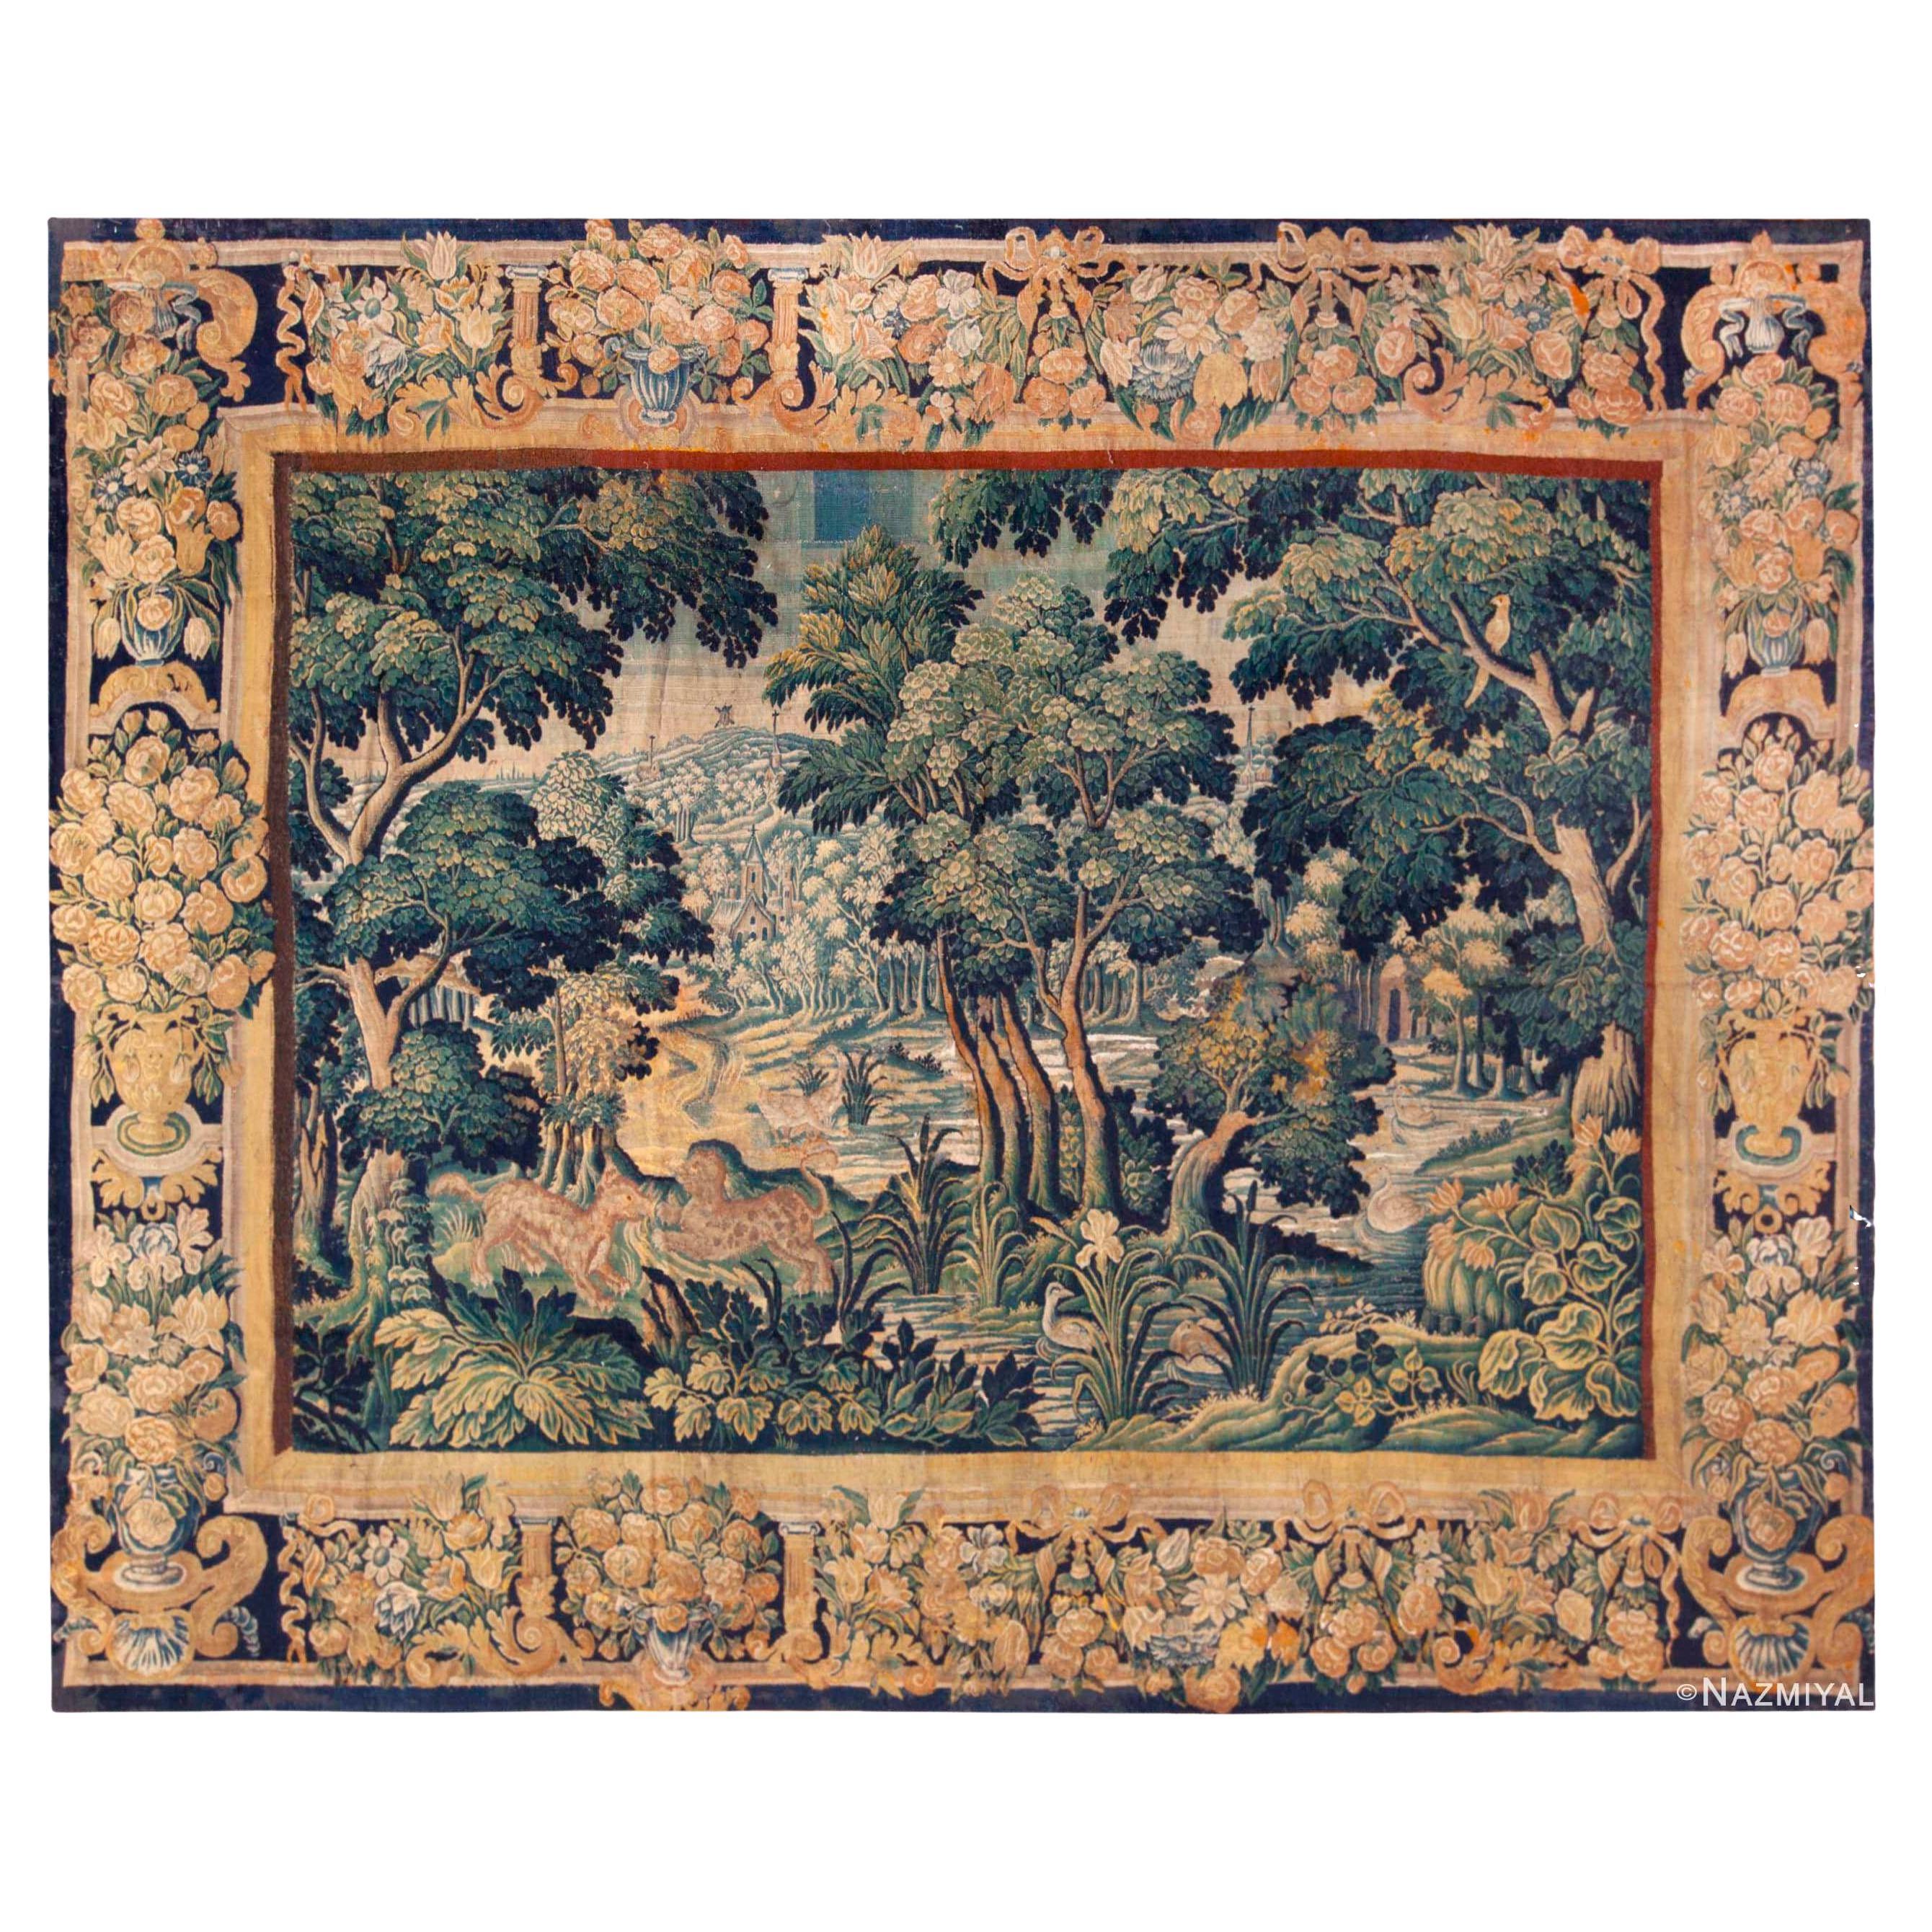 Erstaunlicher antiker französischer Verdure-Wandteppich aus Seide und Wolle aus dem 17. Jahrhundert 10' x 12'10"